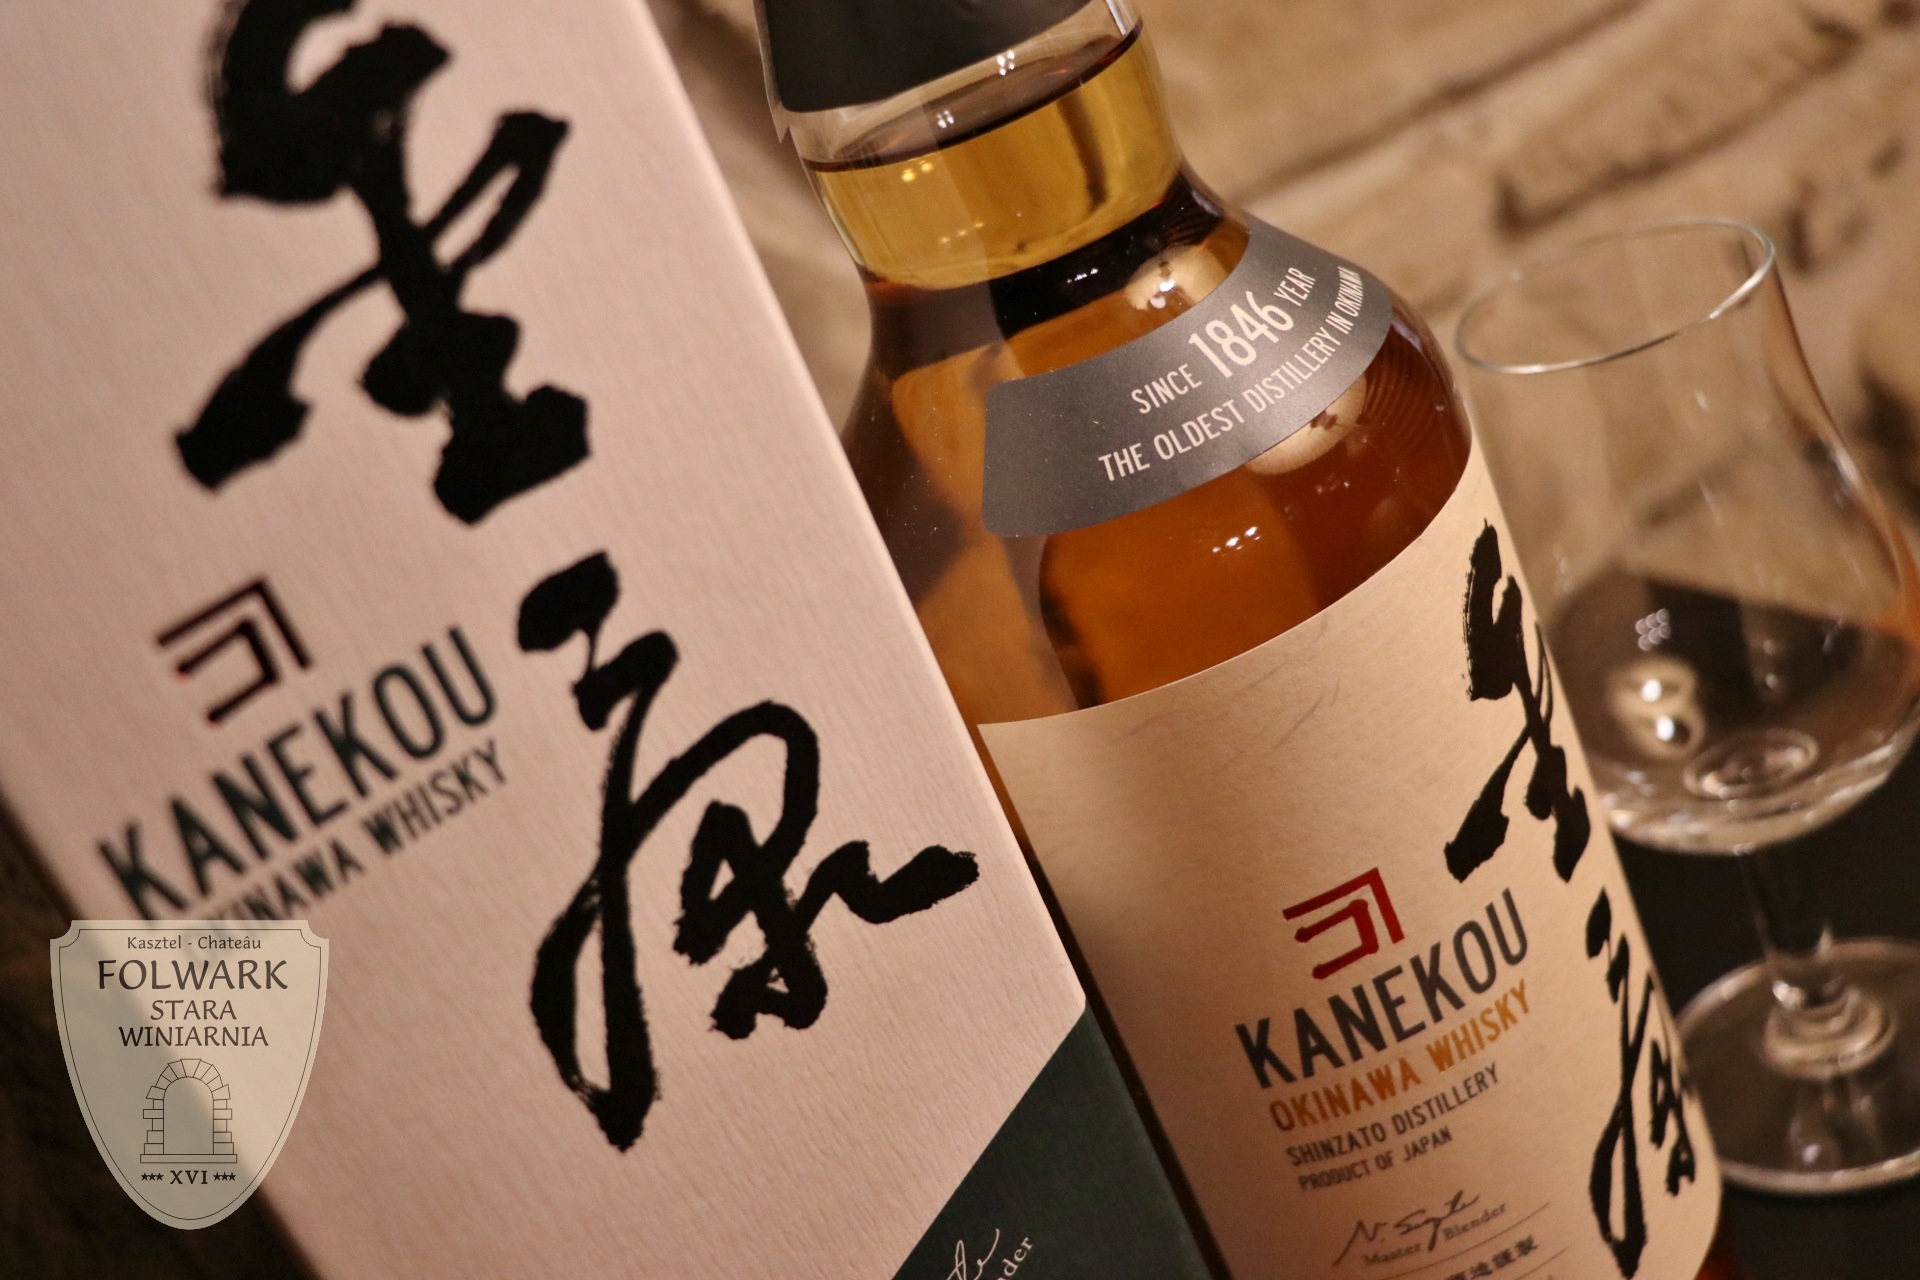 Kanekou Okinawa Whisky